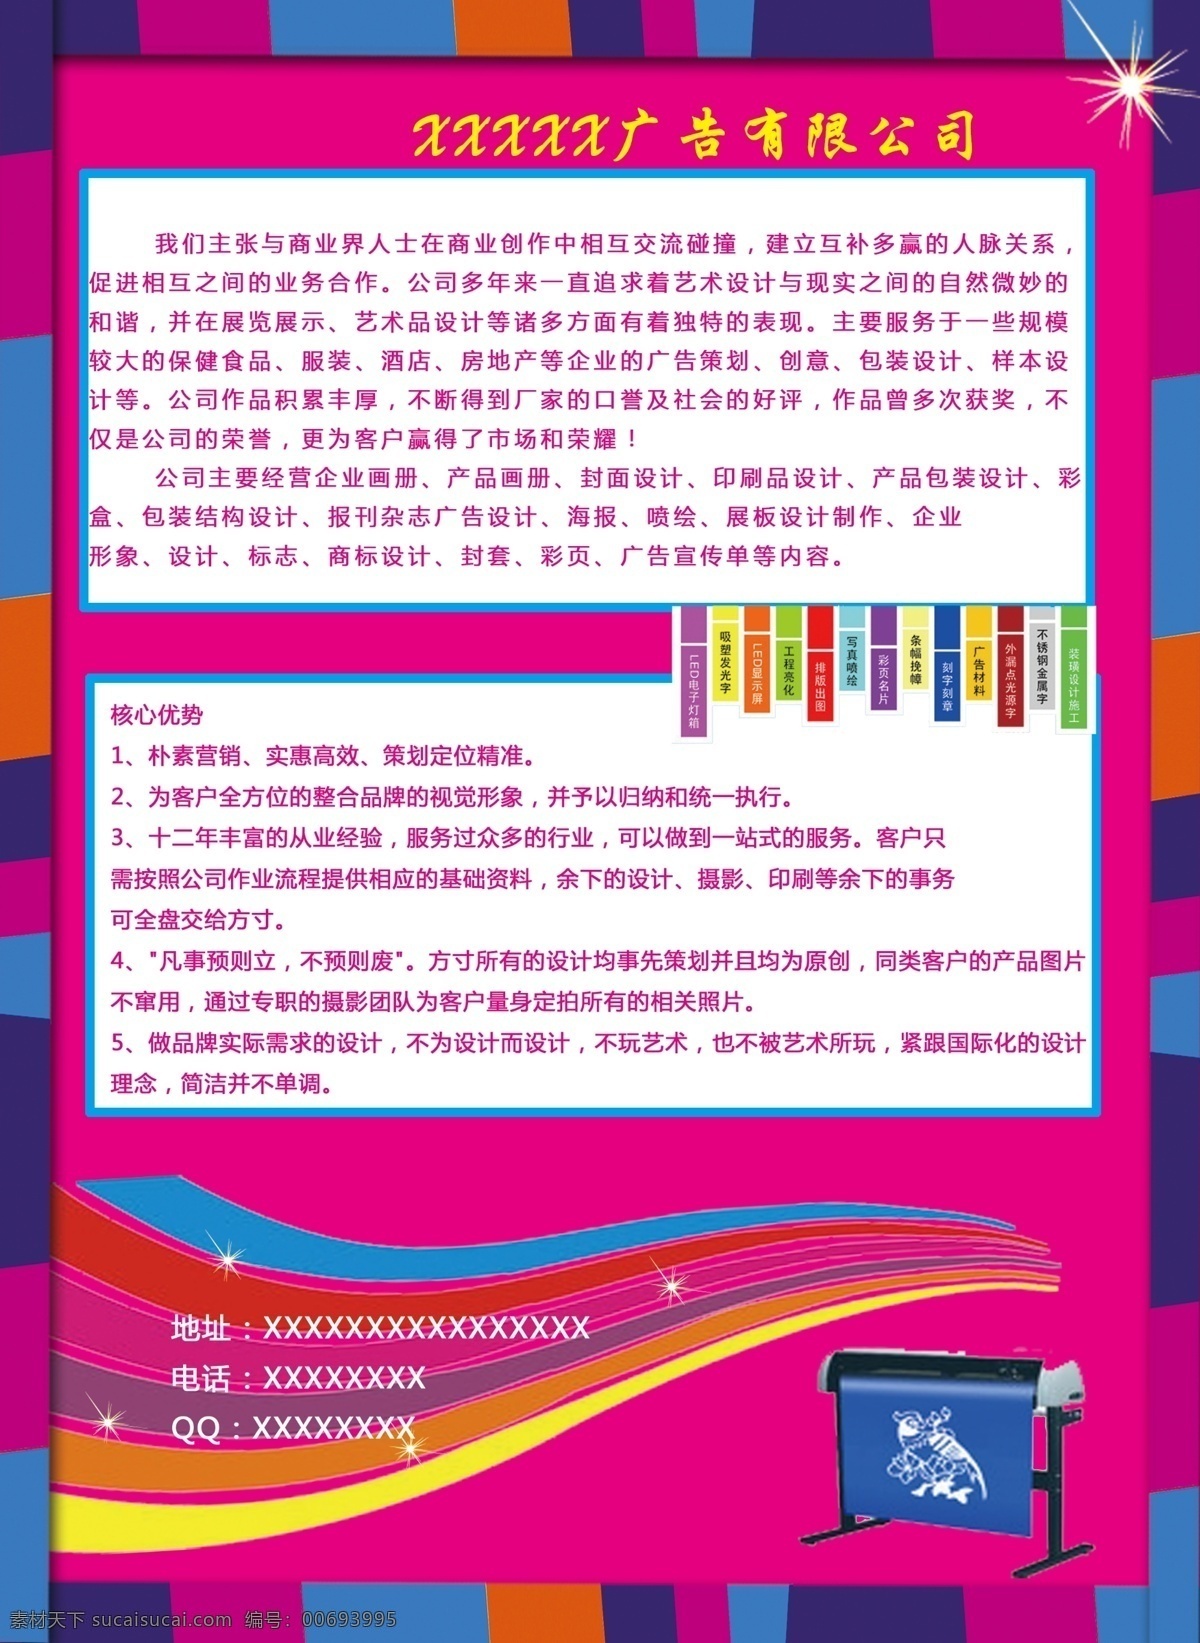 彩页 广告公司彩页 背景 紫色